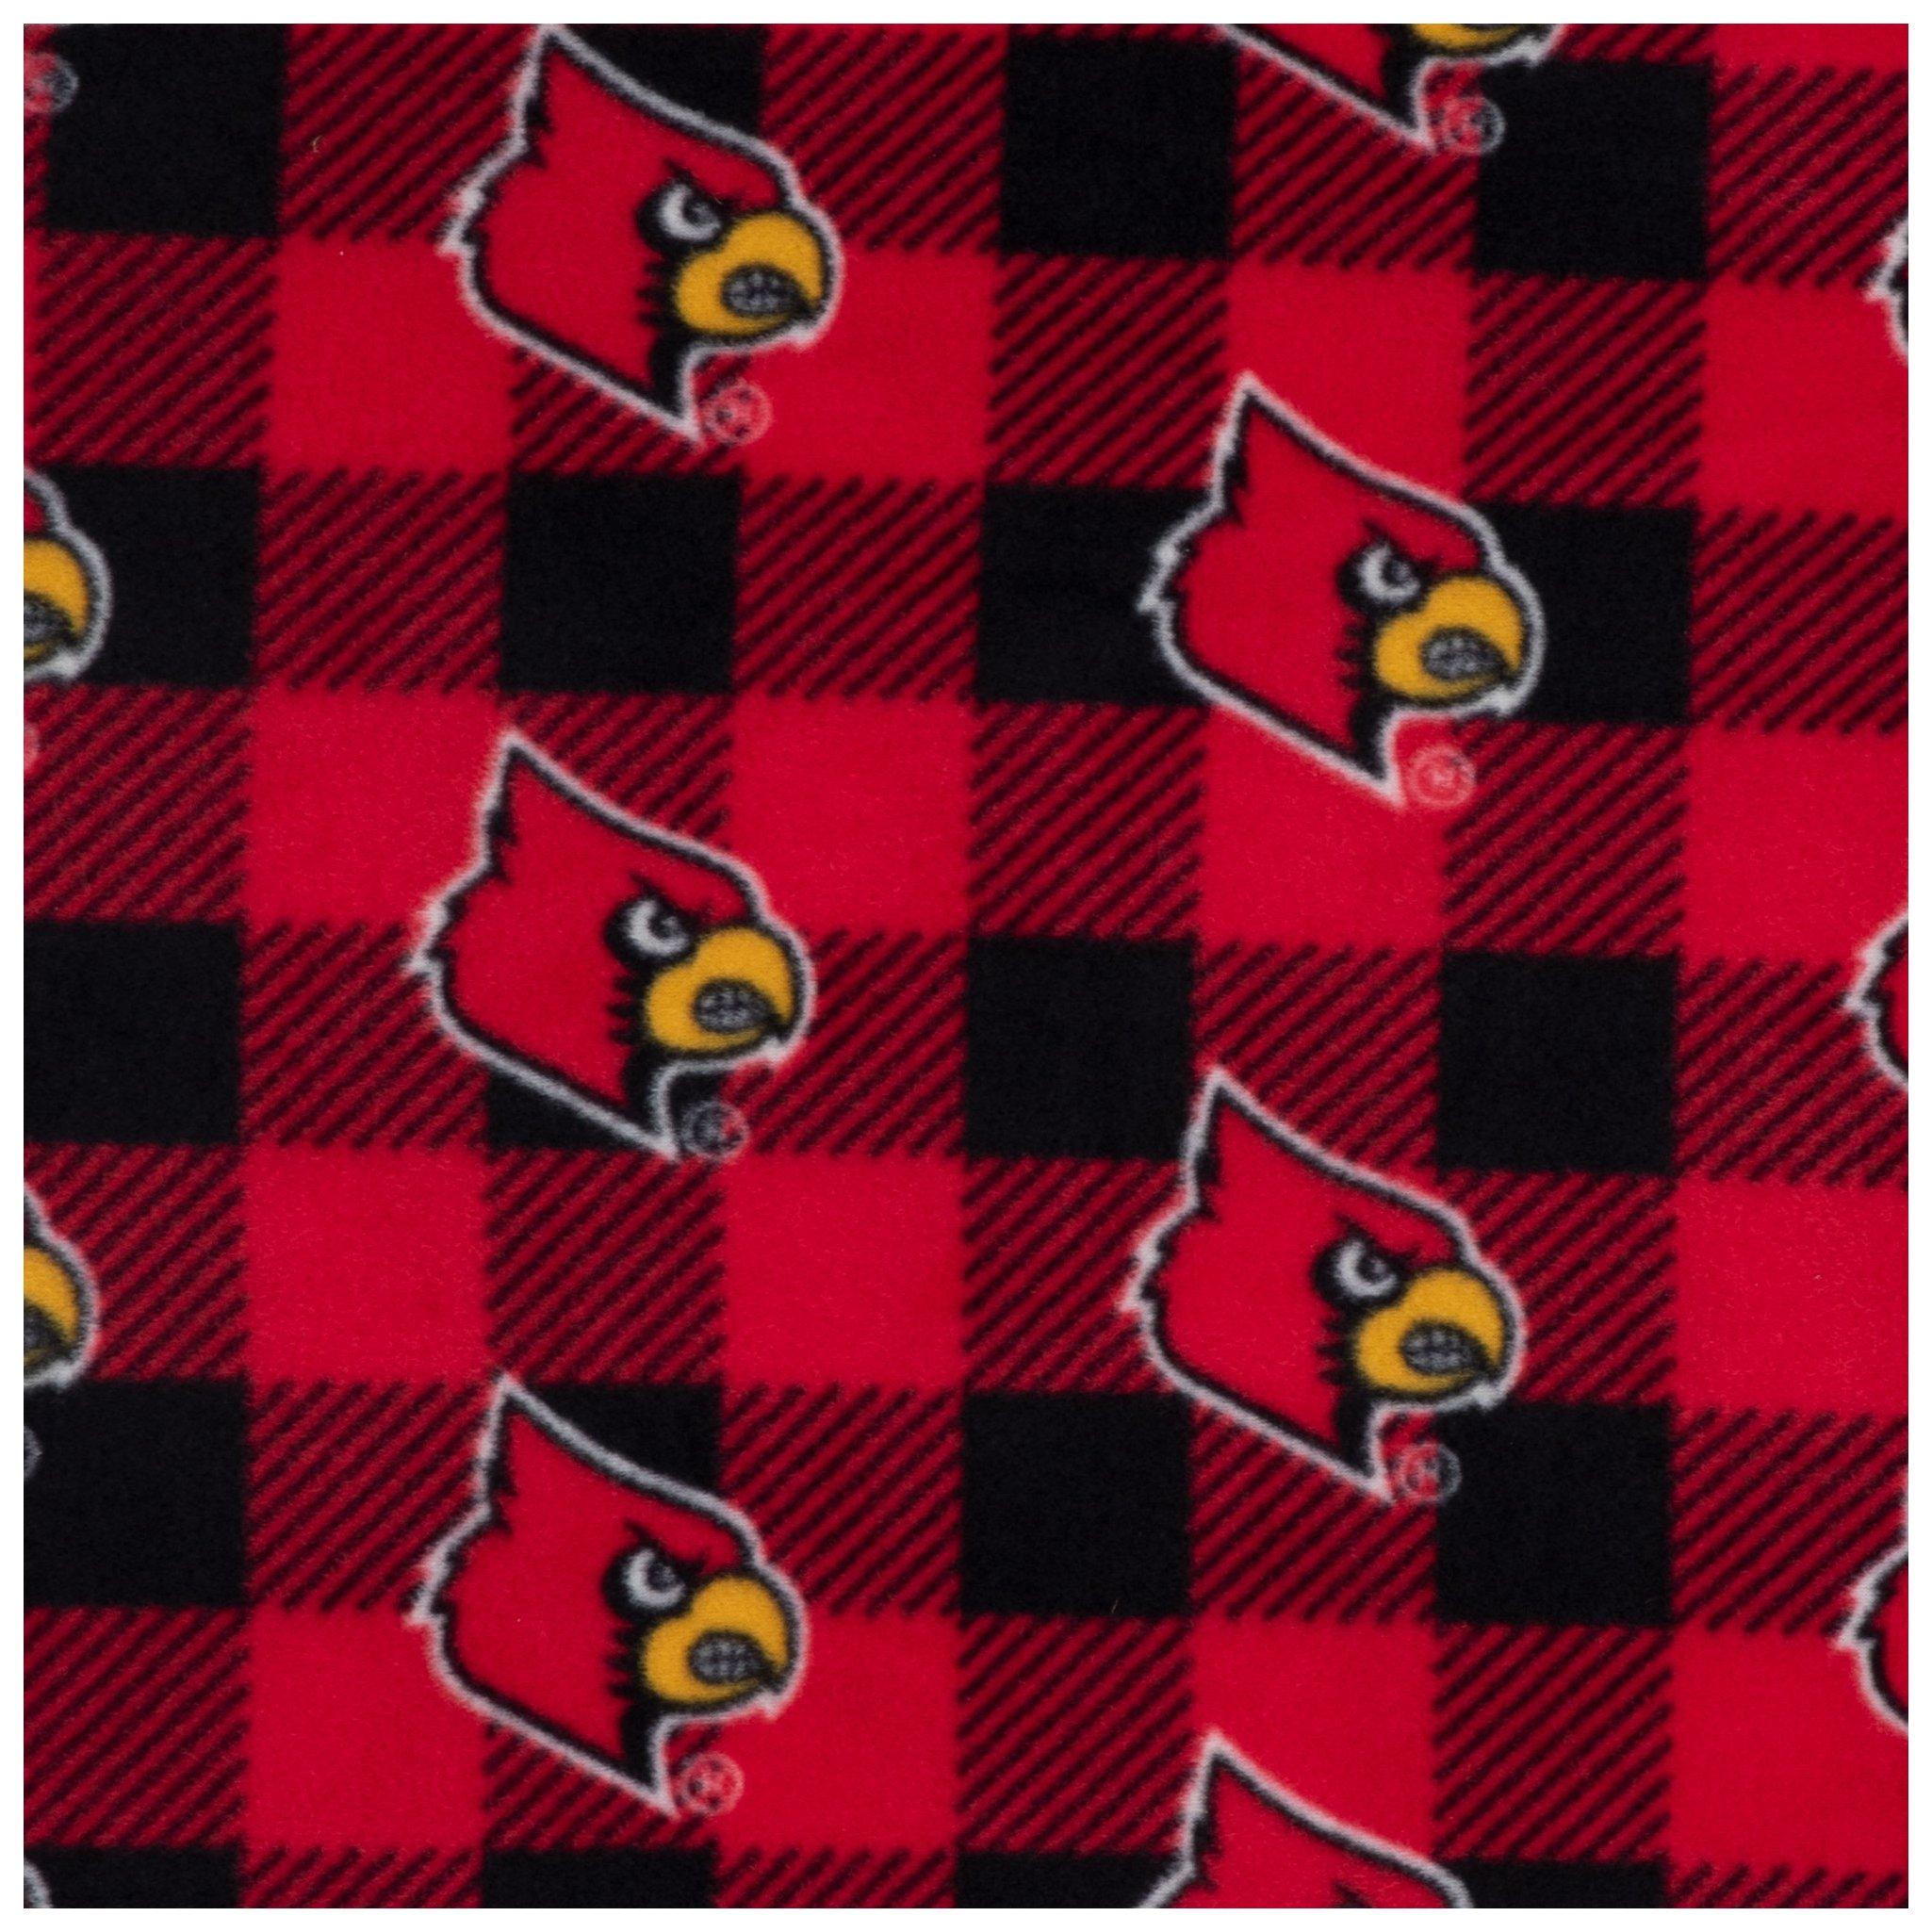 Louisville Cardinals Classic Fleece Blanket